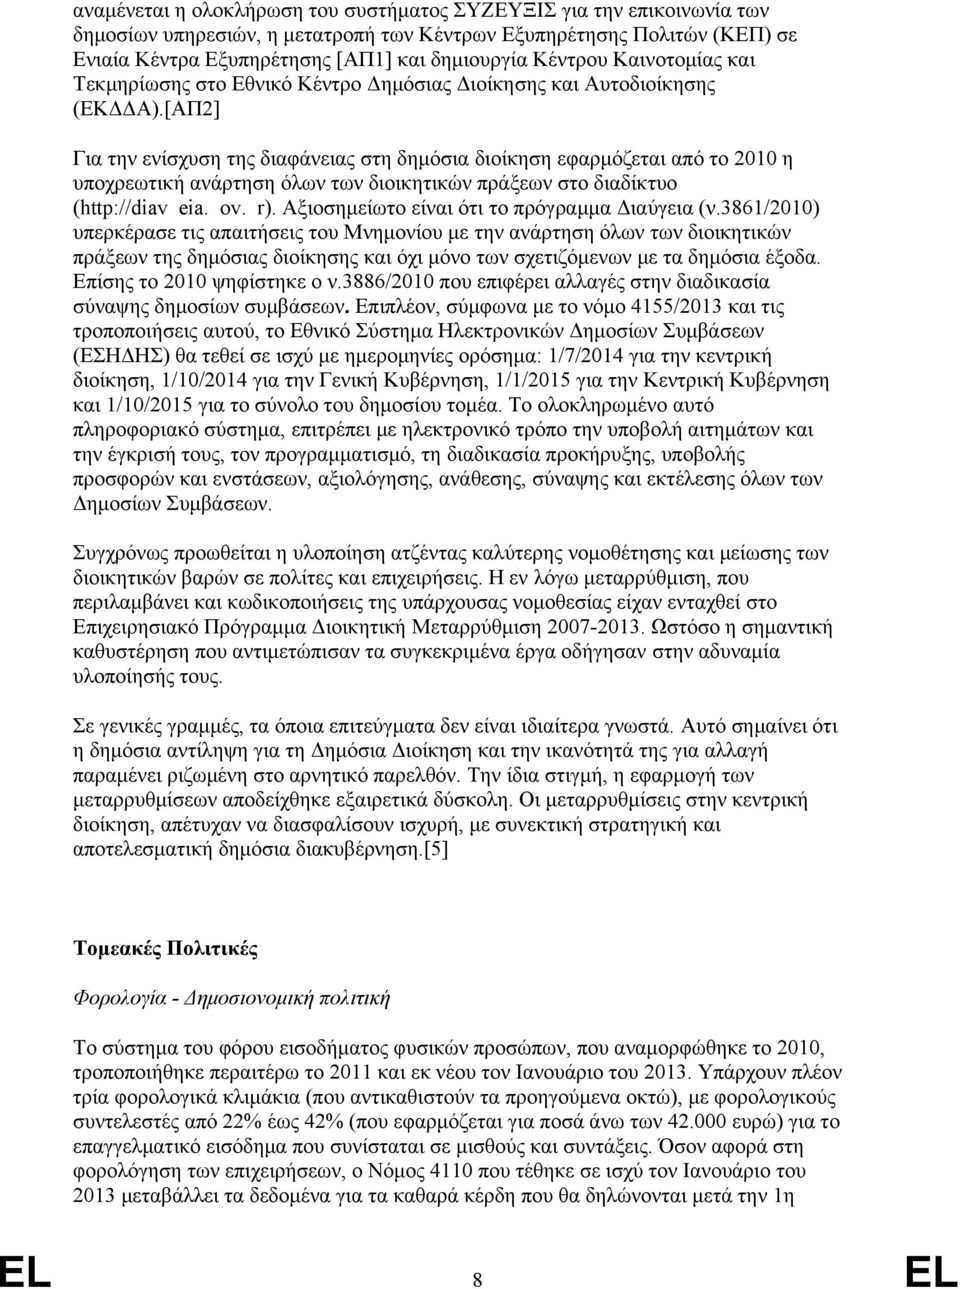 [ΑΠ2] Για την ενίσχυση της διαφάνειας στη δημόσια διοίκηση εφαρμόζεται από το 2010 η υποχρεωτική ανάρτηση όλων των διοικητικών πράξεων στο διαδίκτυο (http://diavgeia.gov.gr).